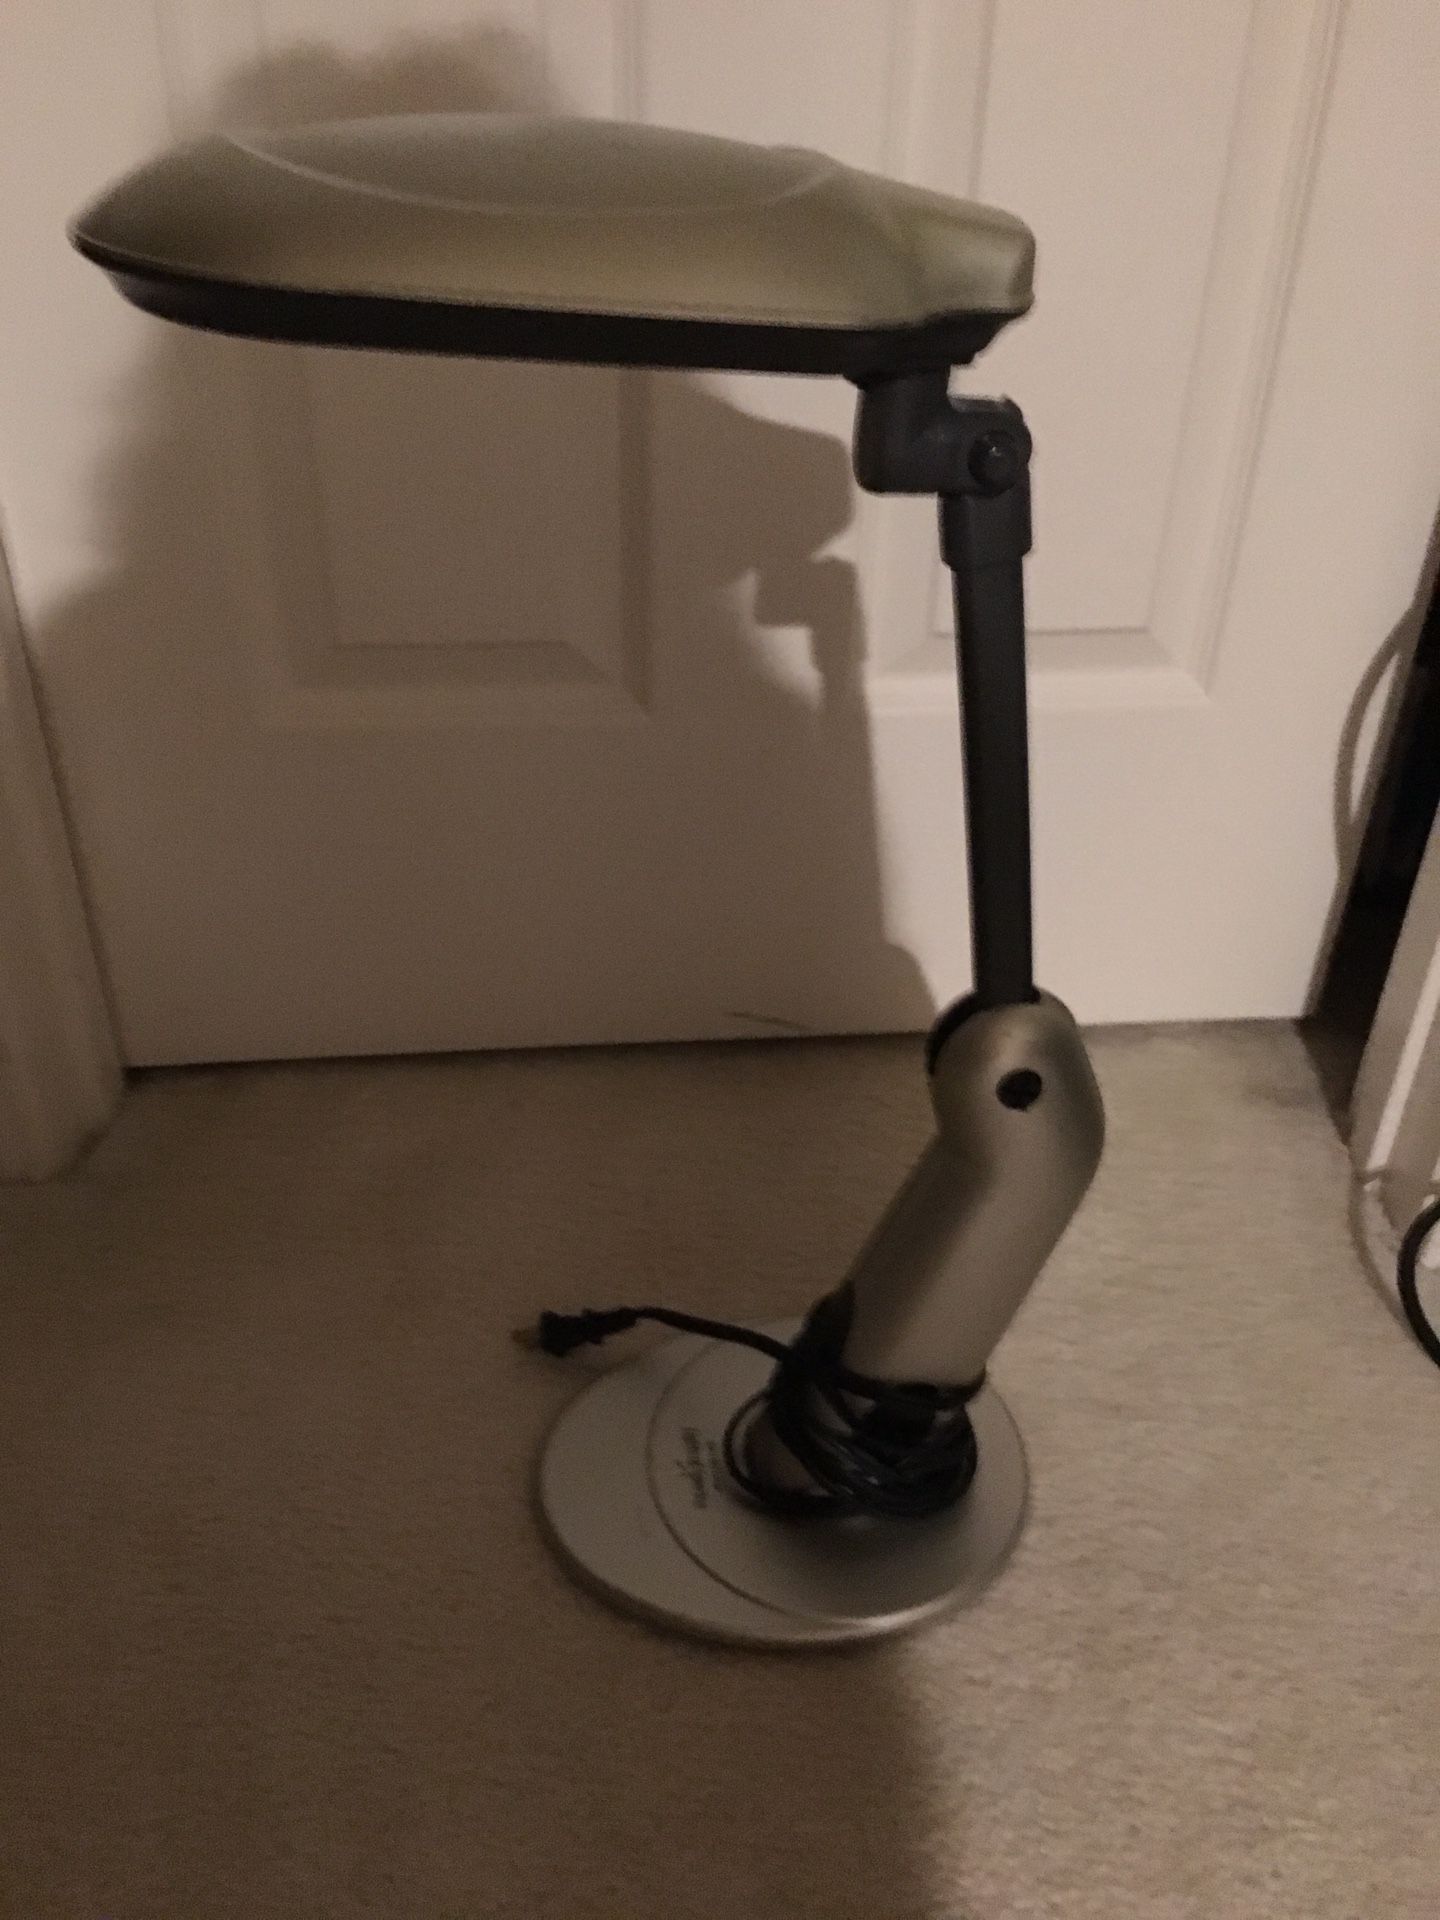 Lamp (Sunlight desk lamp)